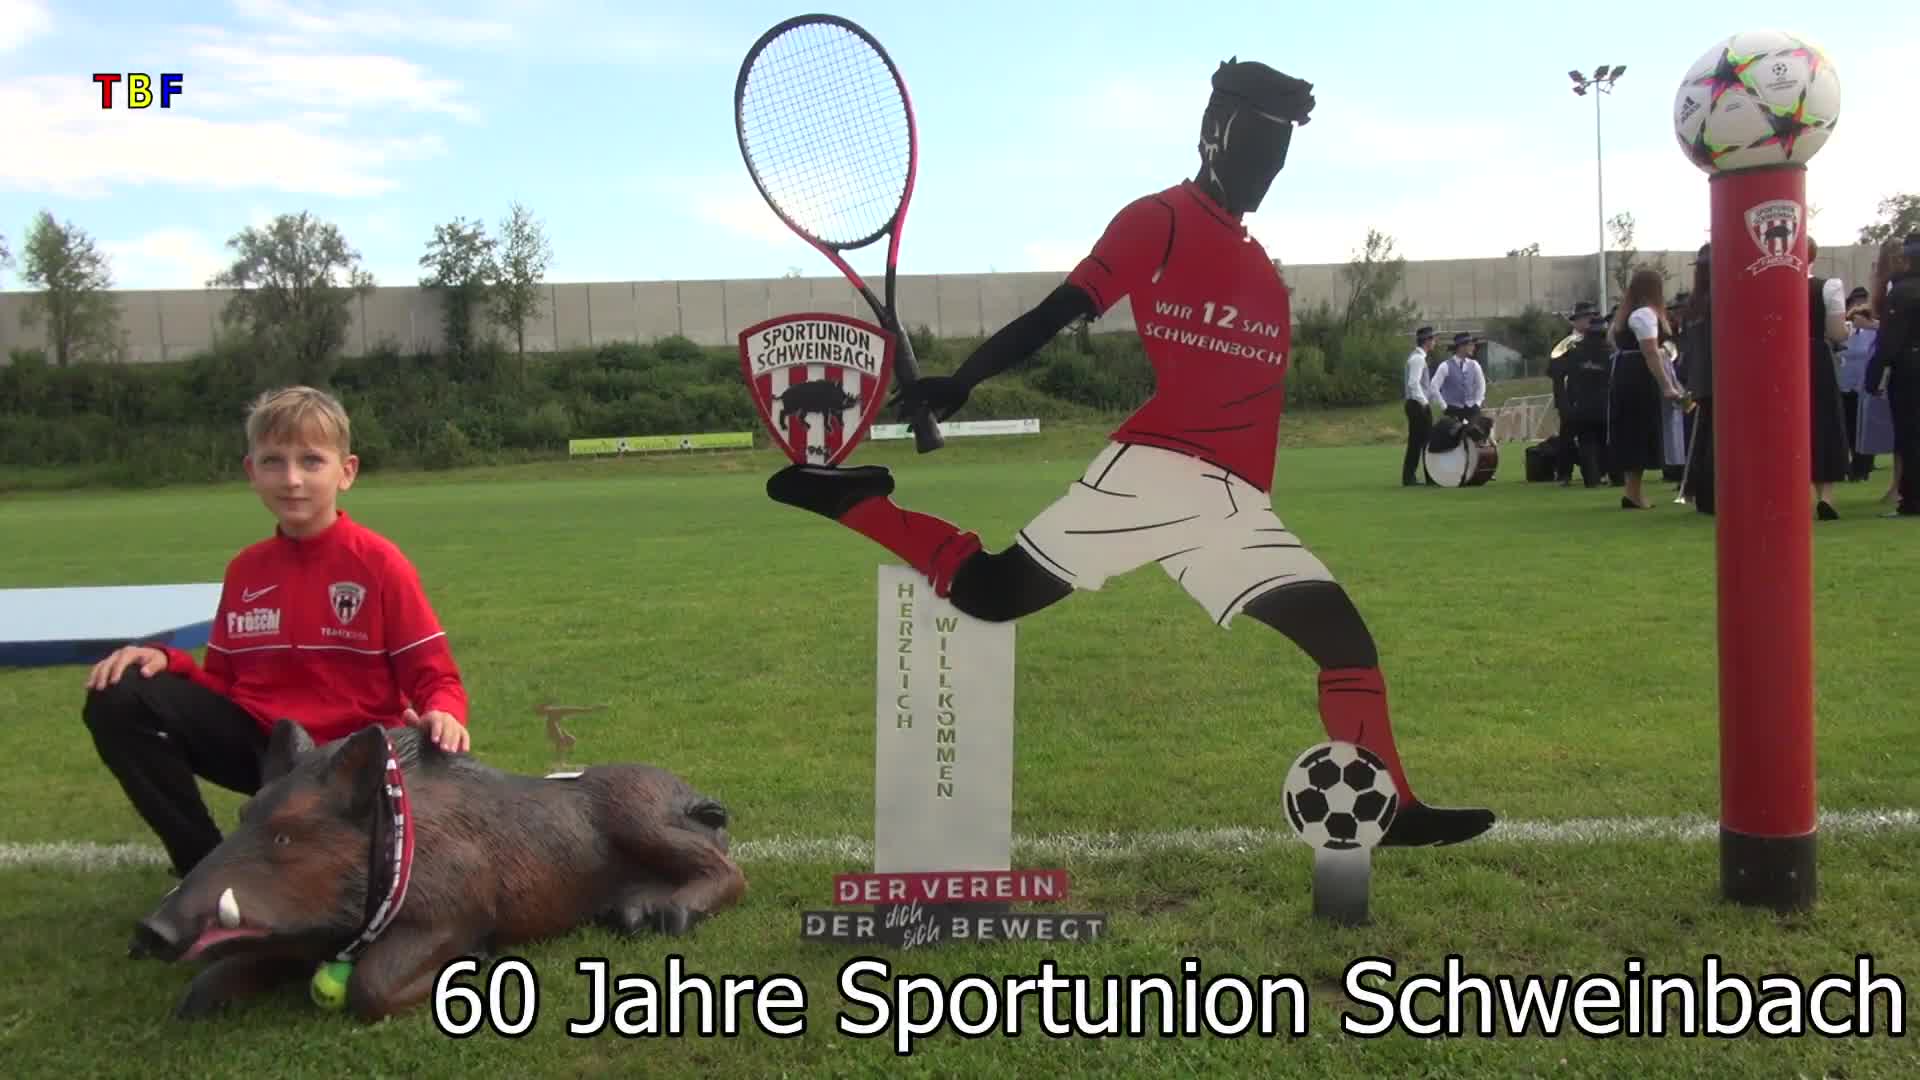 60 Jahre Sportunion Schweinbach